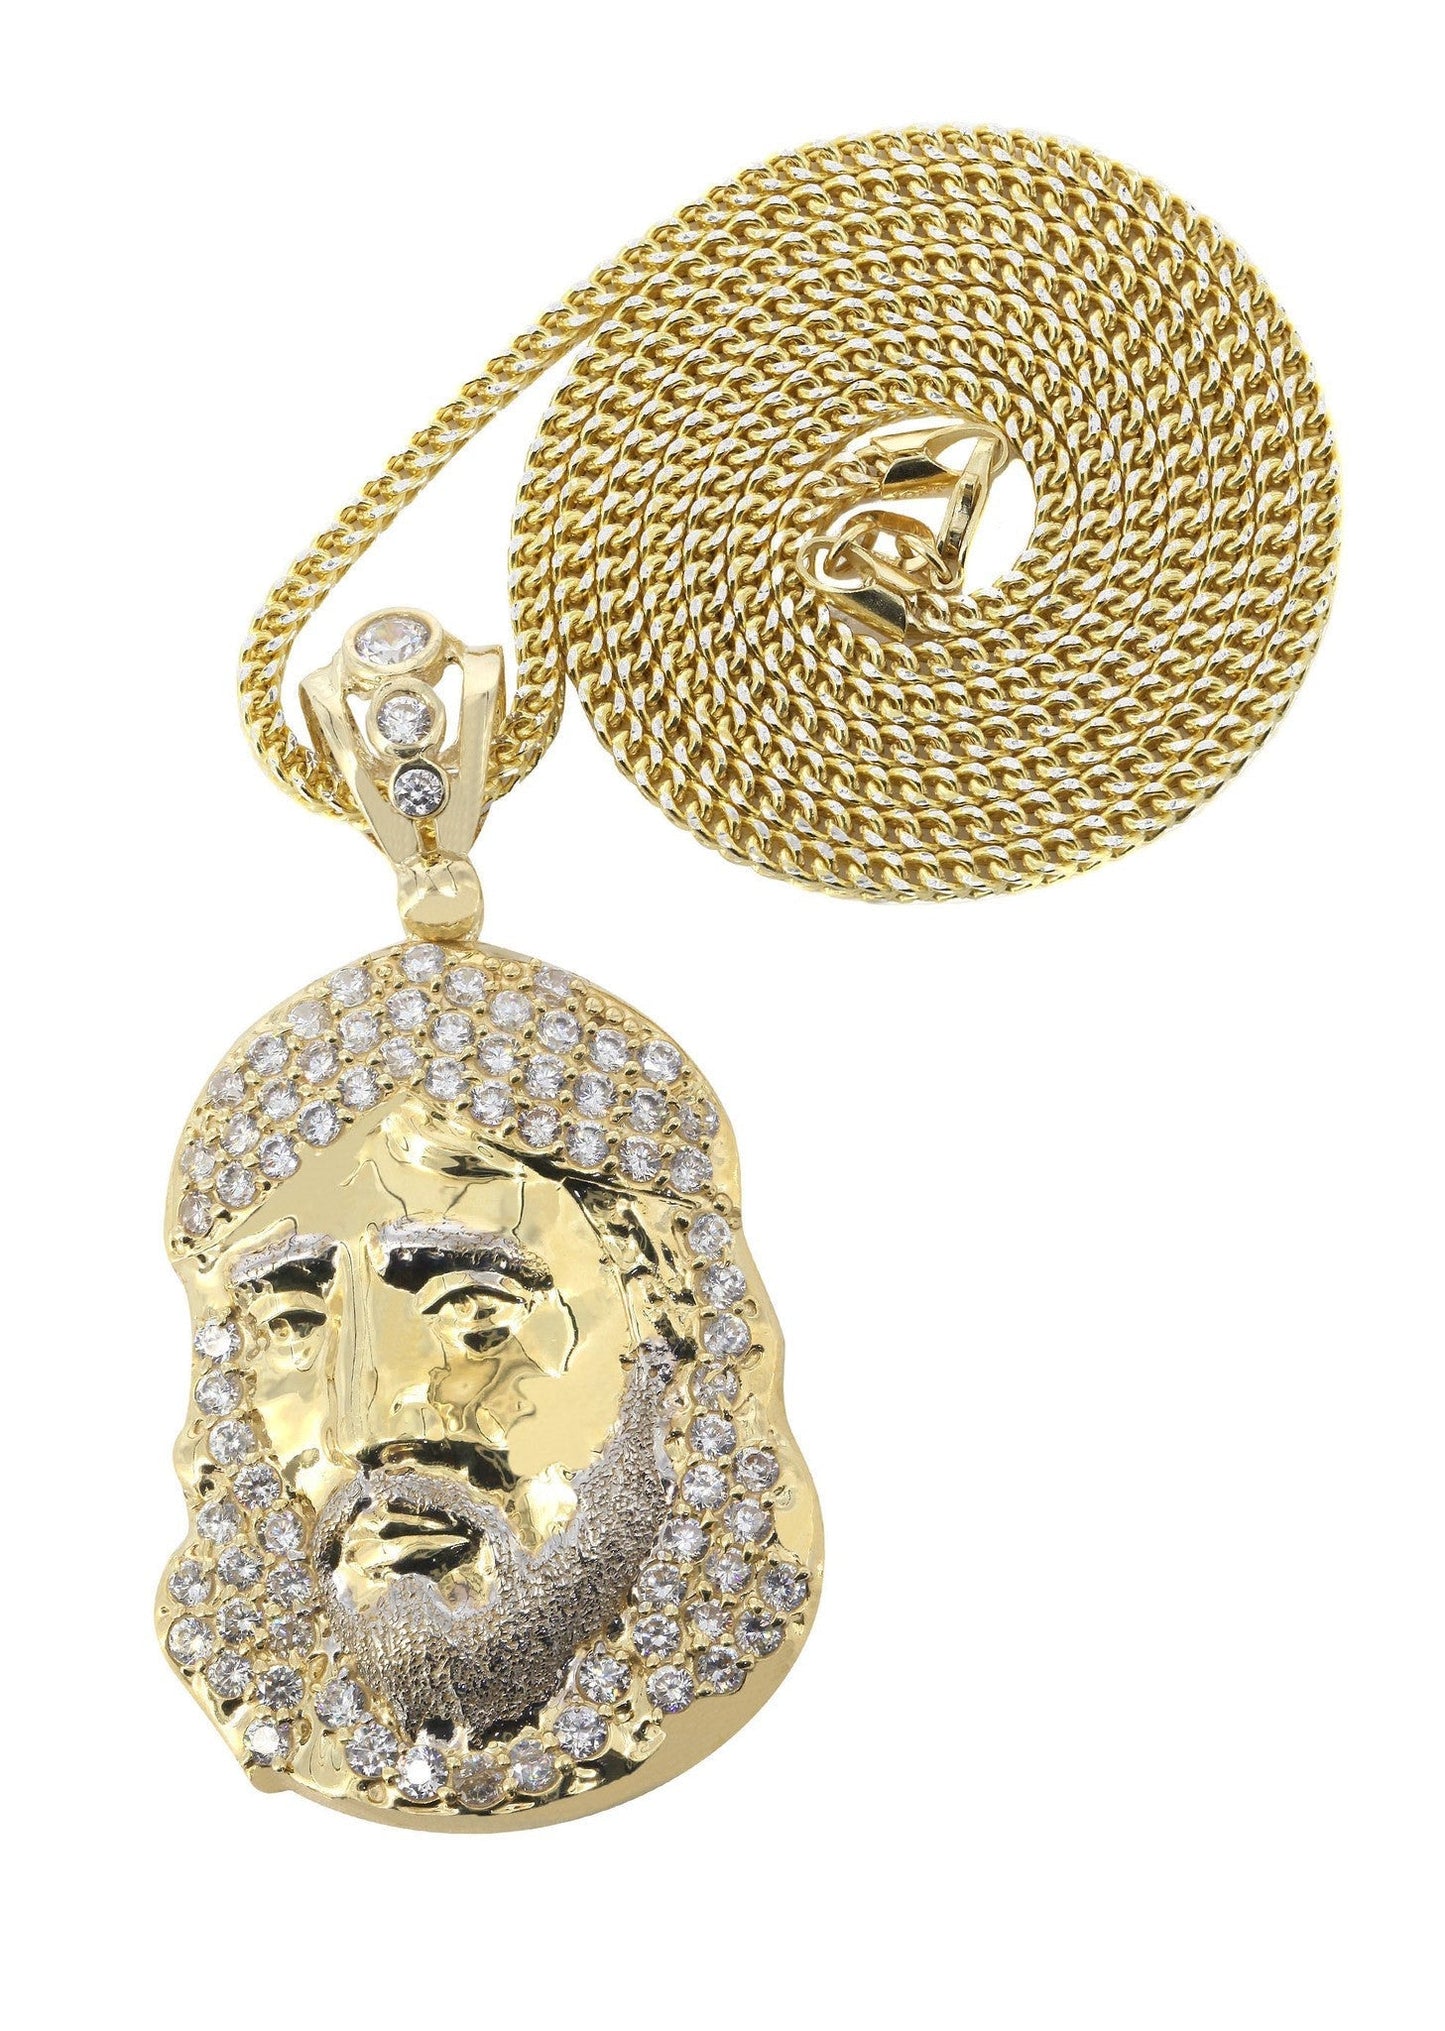 10K Yellow Gold Franco Chain & Cz Jesus Piece Necklace